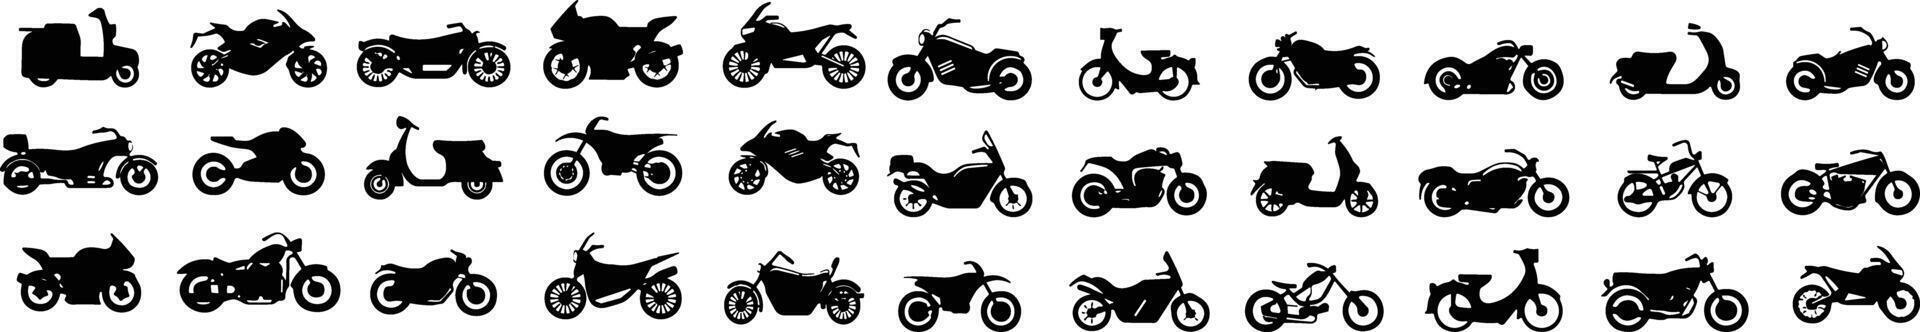 Motorrad Satz. Motor- Transport, Motorrad Lieferung, Motor- Zyklus zum Moto-Cross, Fahrrad Aktivität, Motor. modern Fahrzeuge, Roller, Fahrräder und Häcksler. Vektor Illustration. Motor- oder schwer Fahrrad